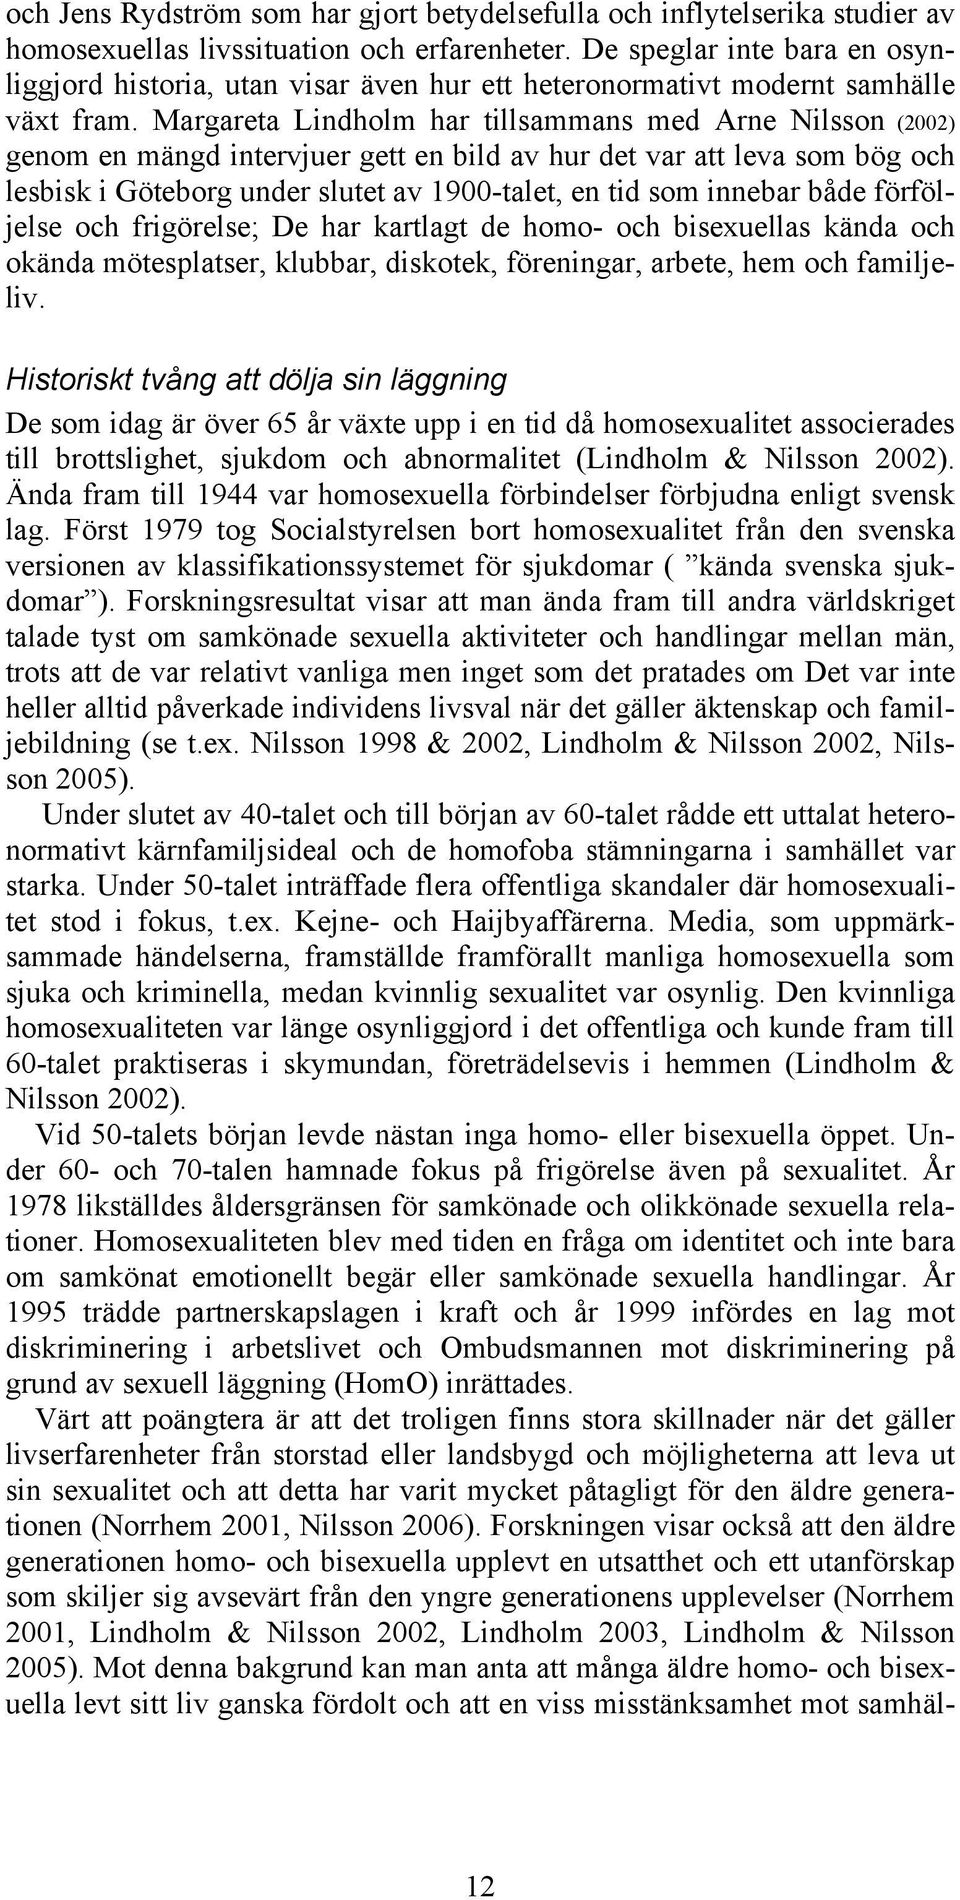 Margareta Lindholm har tillsammans med Arne Nilsson (2002) genom en mängd intervjuer gett en bild av hur det var att leva som bög och lesbisk i Göteborg under slutet av 1900-talet, en tid som innebar